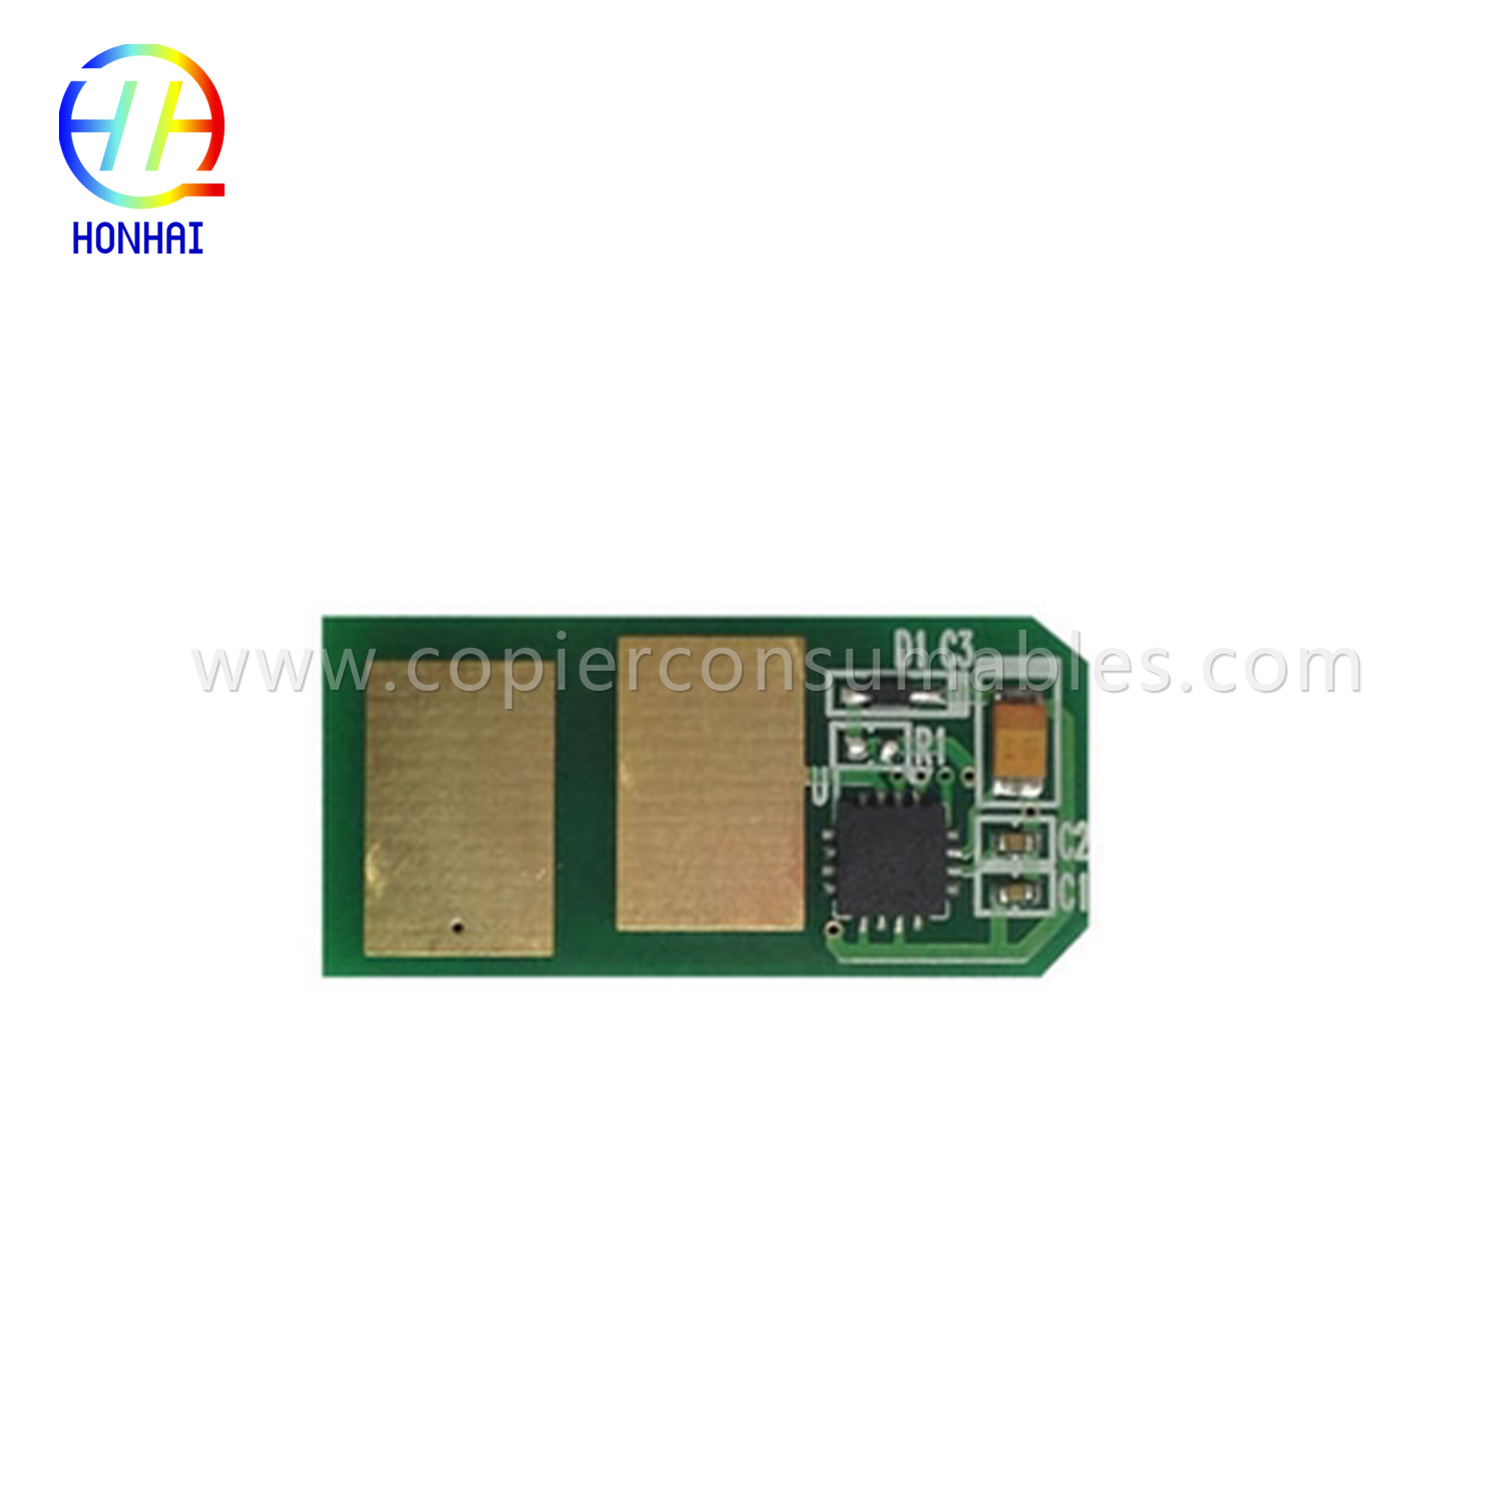 Toner cartridge Chip para sa Oki C301 C321 1.5K 拷贝